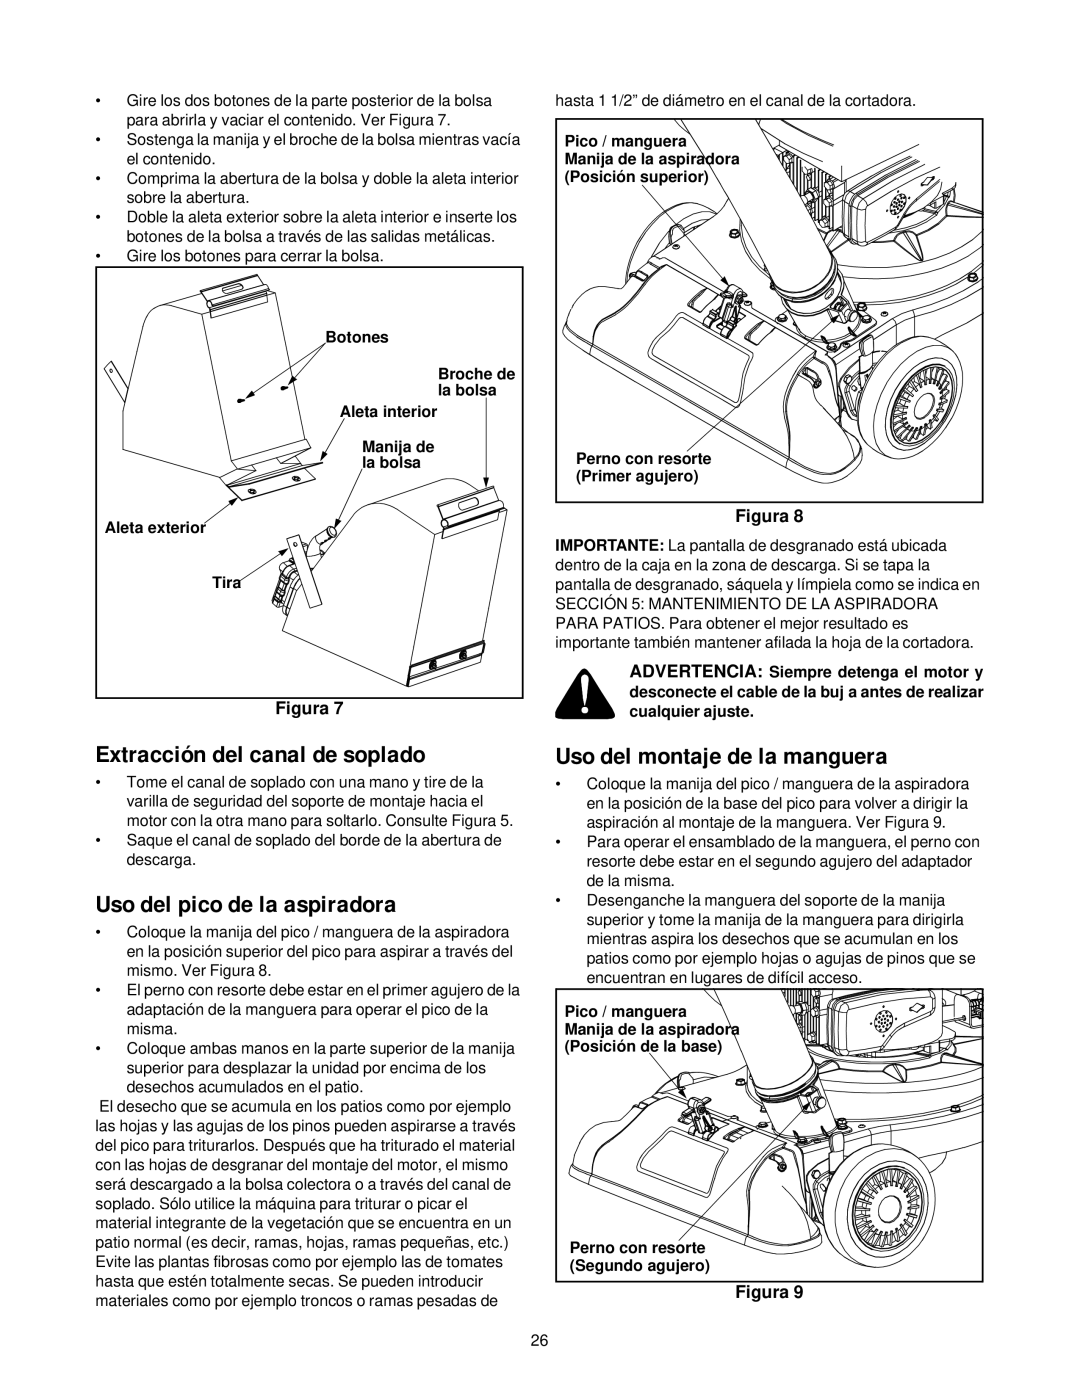 Yard-Man 24A-060F401 manual Extracción del canal de soplado, Uso del pico de la aspiradora, Uso del montaje de la manguera 